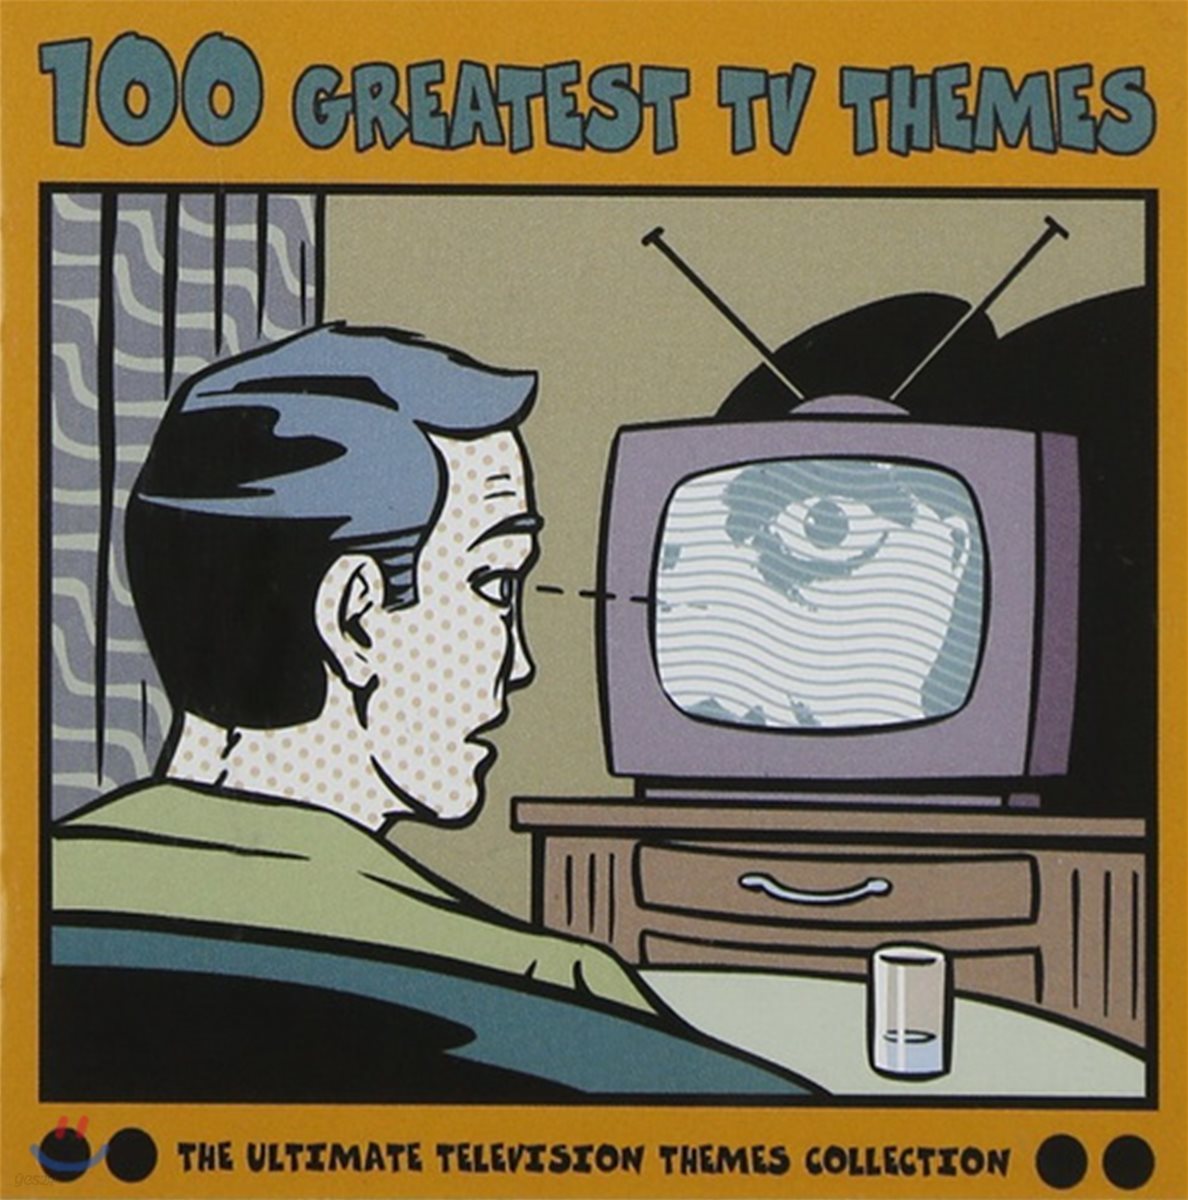 추억의 외국 TV 드라마 음악 100 (100 Greatest TV Themes)